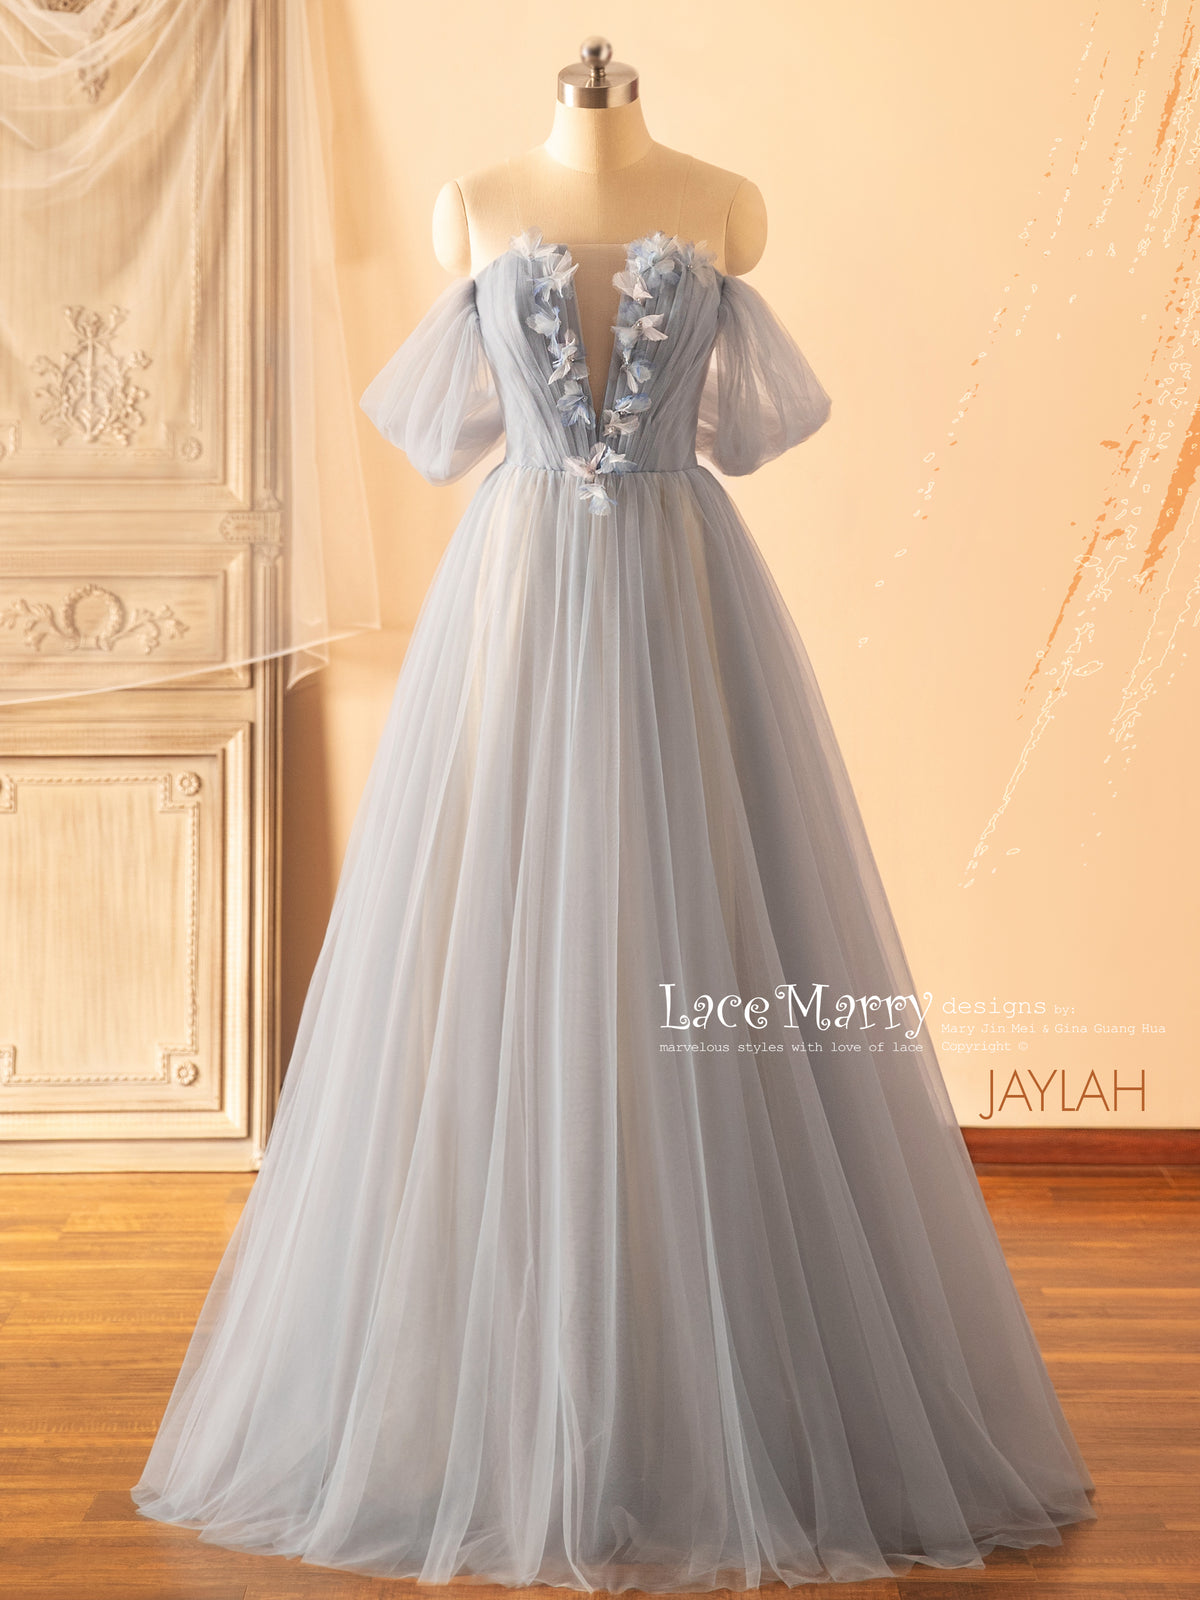 JAYLAH / Off Shoulder Wedding Dress in Blue Color